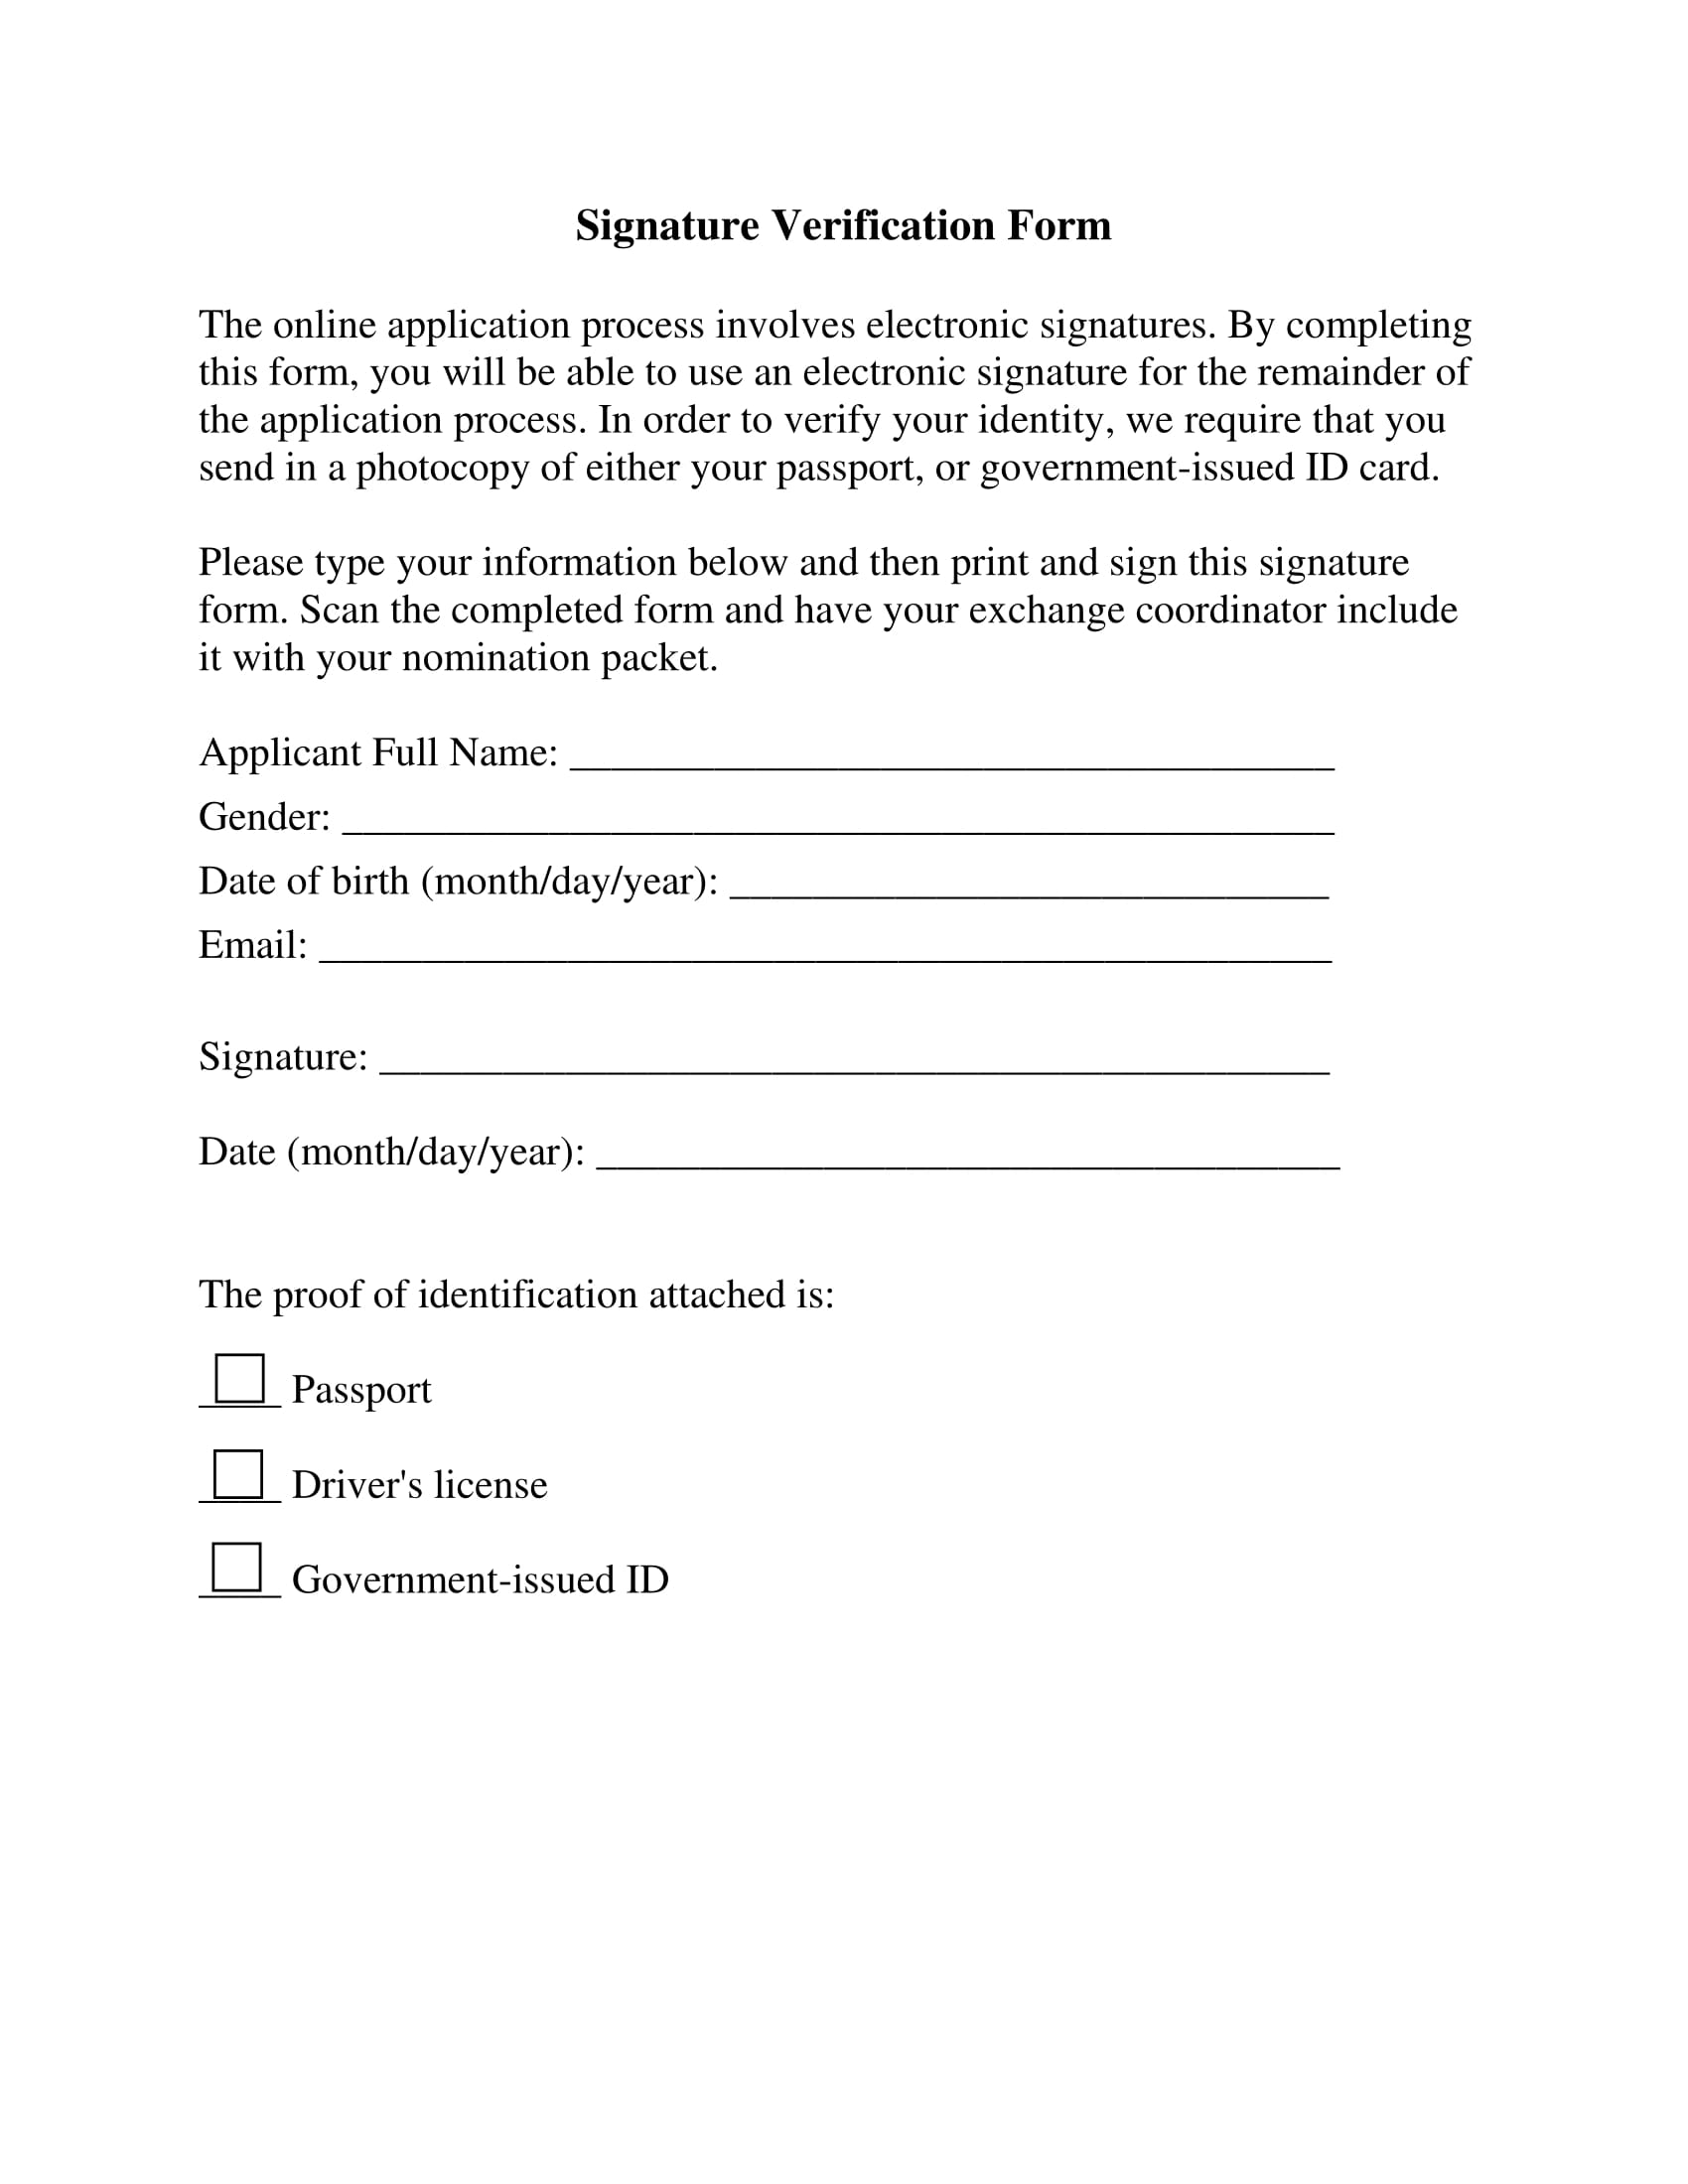 Bank signature verification letter format pdf